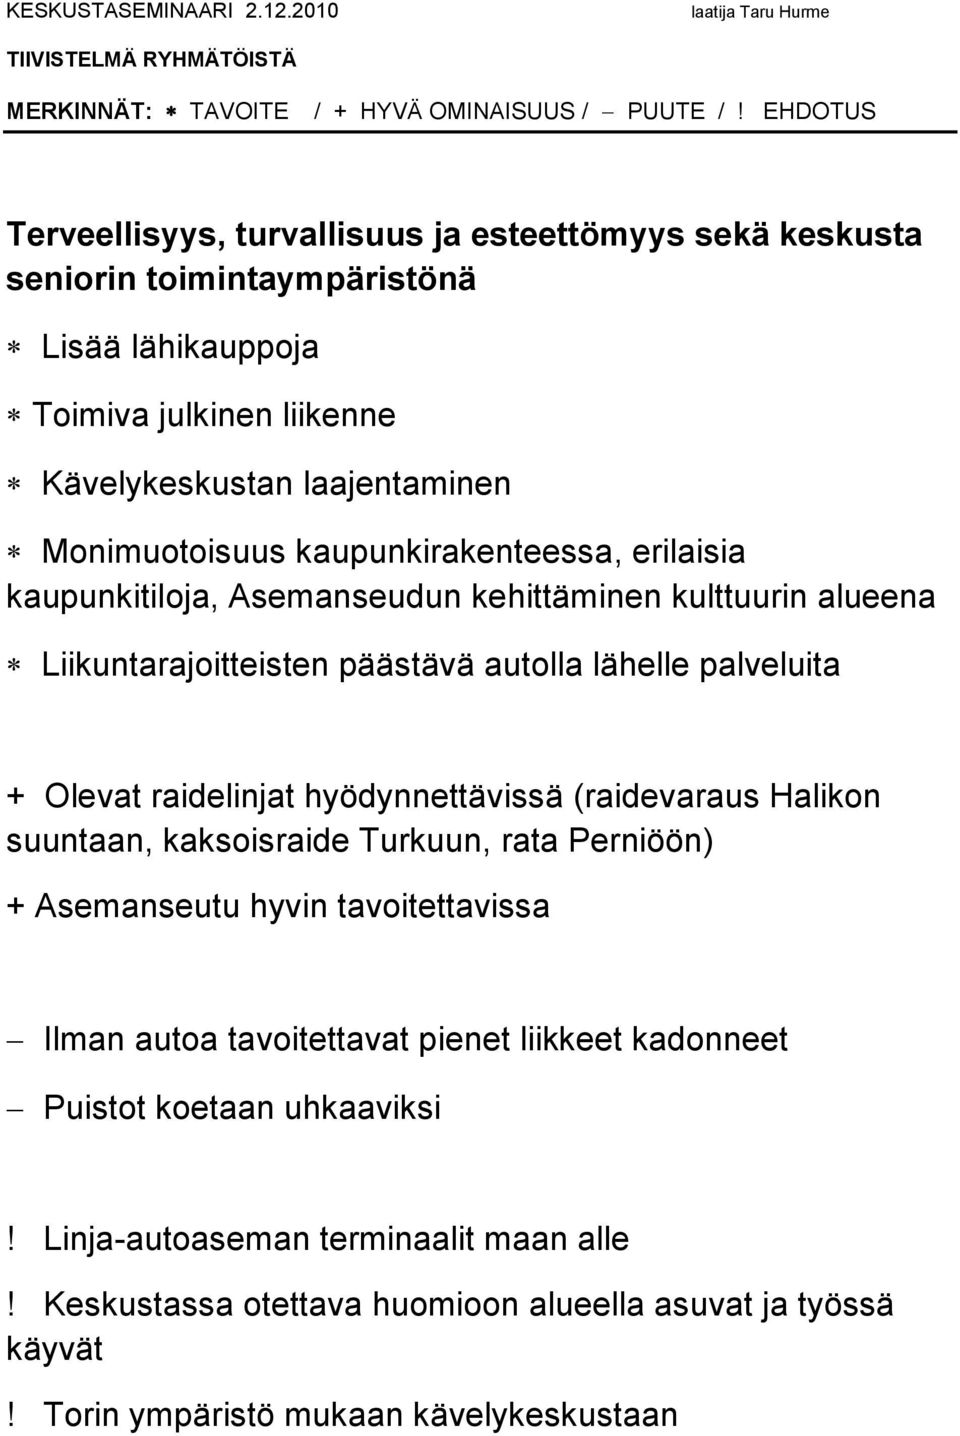 Olevat raidelinjat hyödynnettävissä (raidevaraus Halikon suuntaan, kaksoisraide Turkuun, rata Perniöön) + Asemanseutu hyvin tavoitettavissa Ilman autoa tavoitettavat pienet